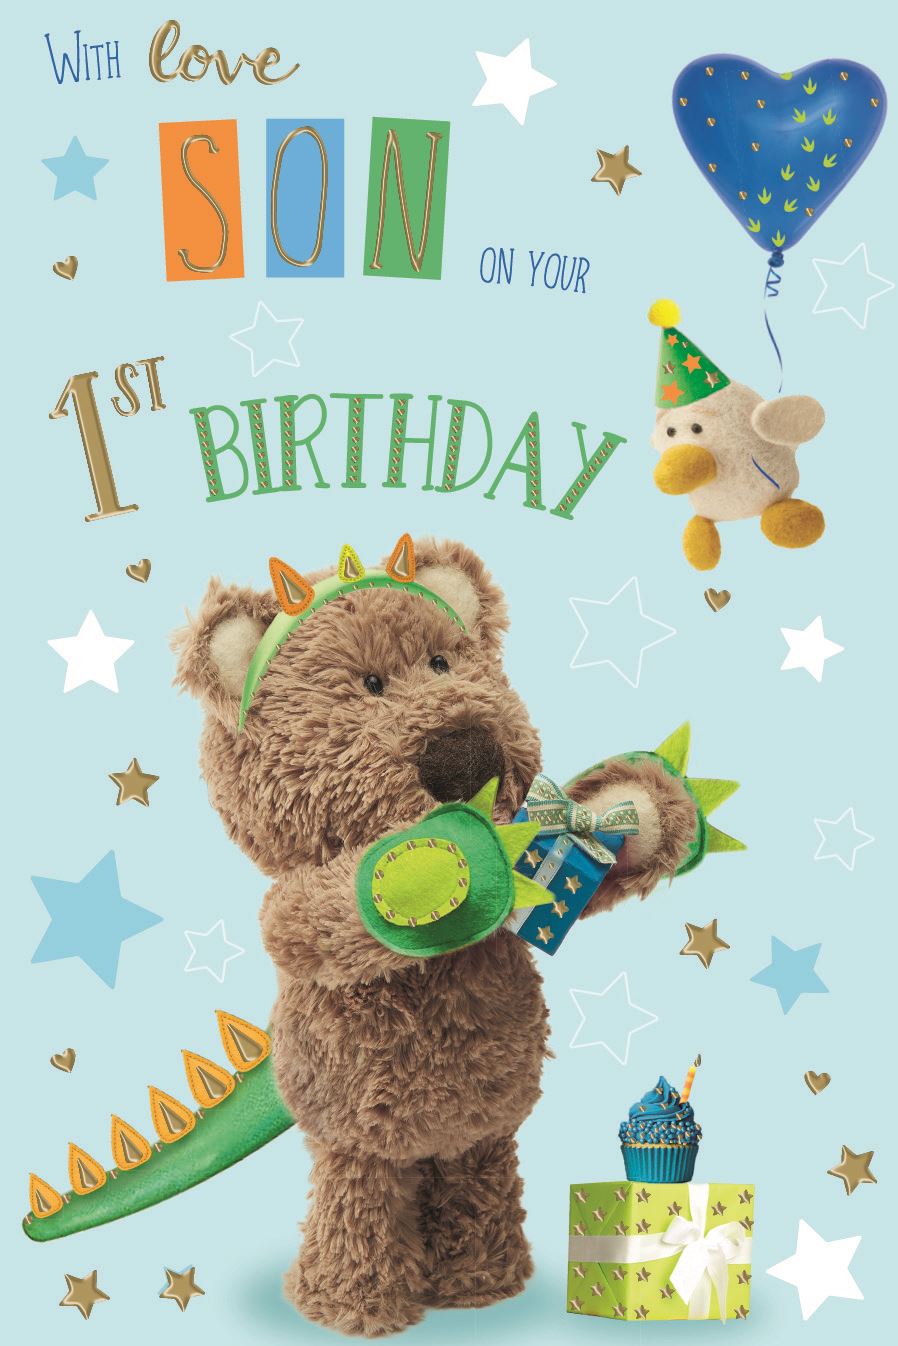 Son 1st birthday card - cute bear